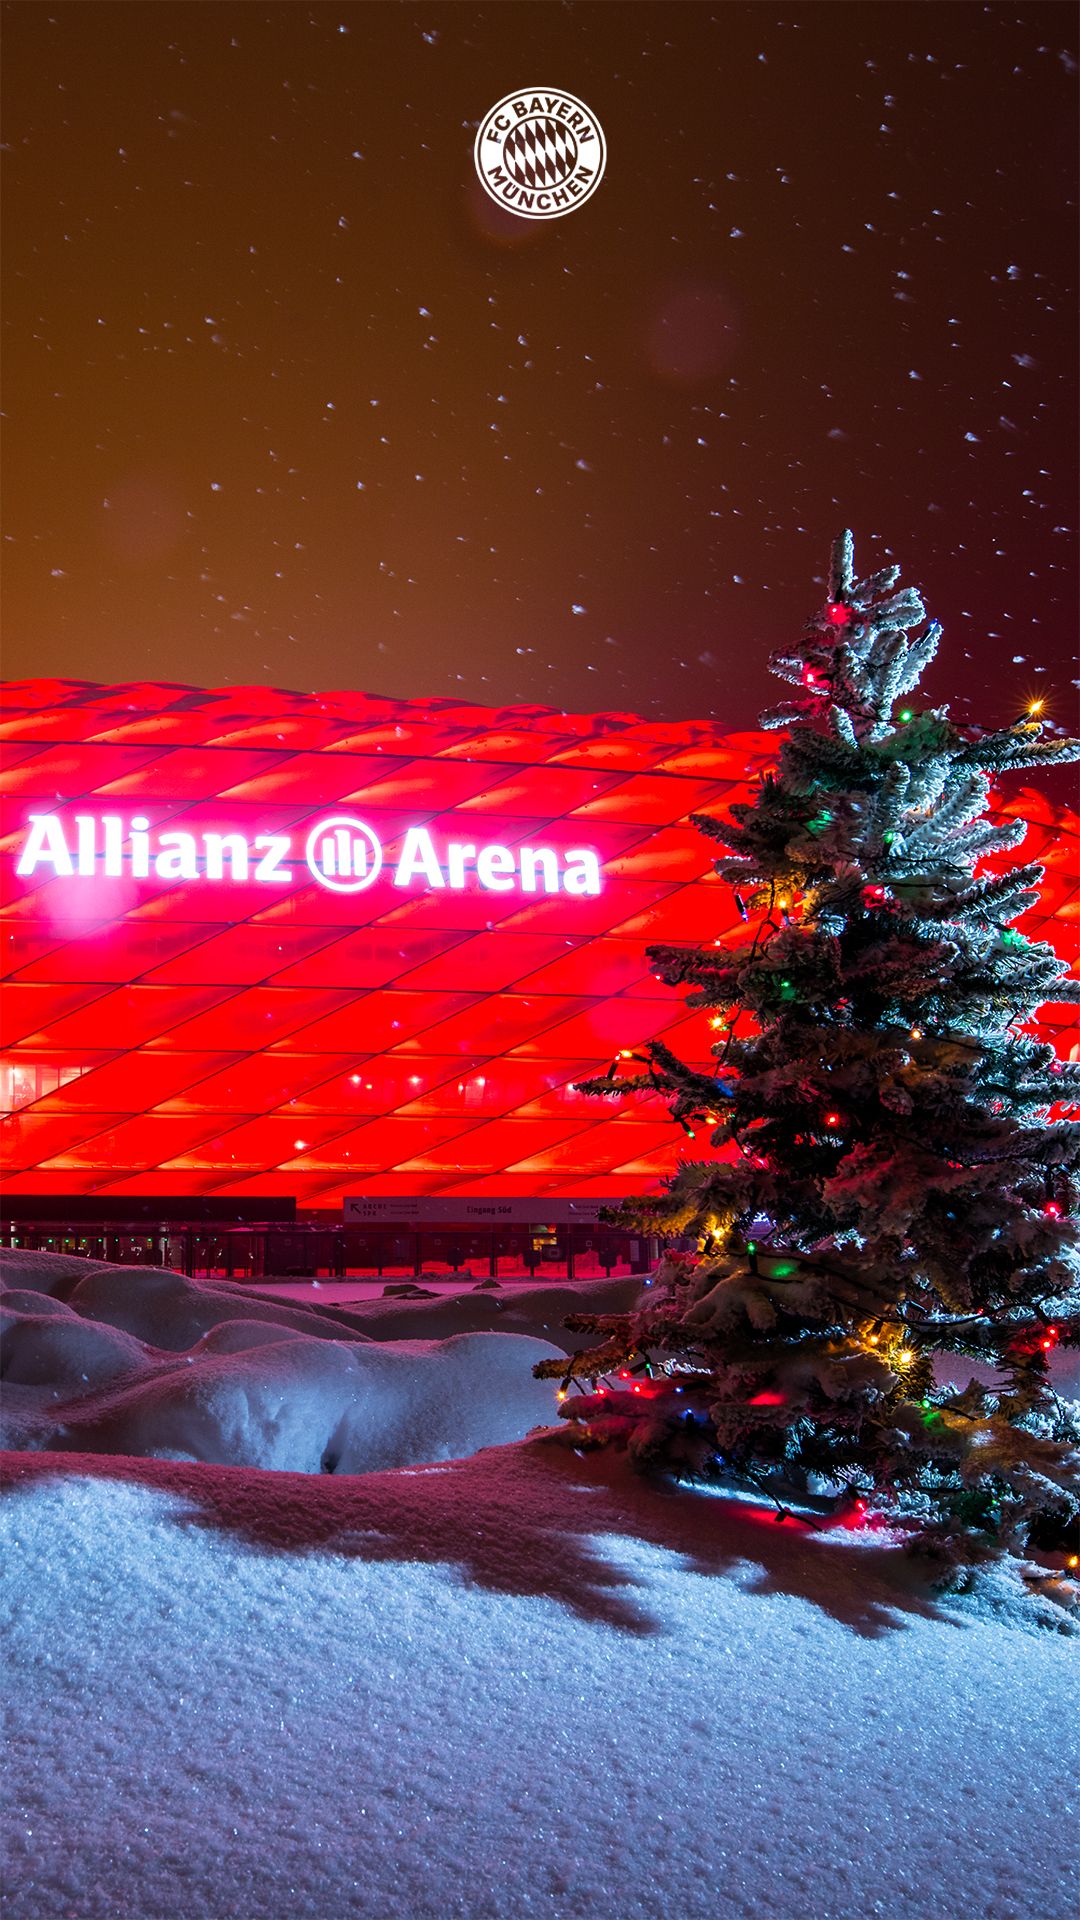 Geiles Hintergrundbild 1080x1920. تويتر \ FC Bayern München على تويتر: Wir haben für euch weihnachtliche Hintergrundbilder von unserer schönen Allianz Arena!